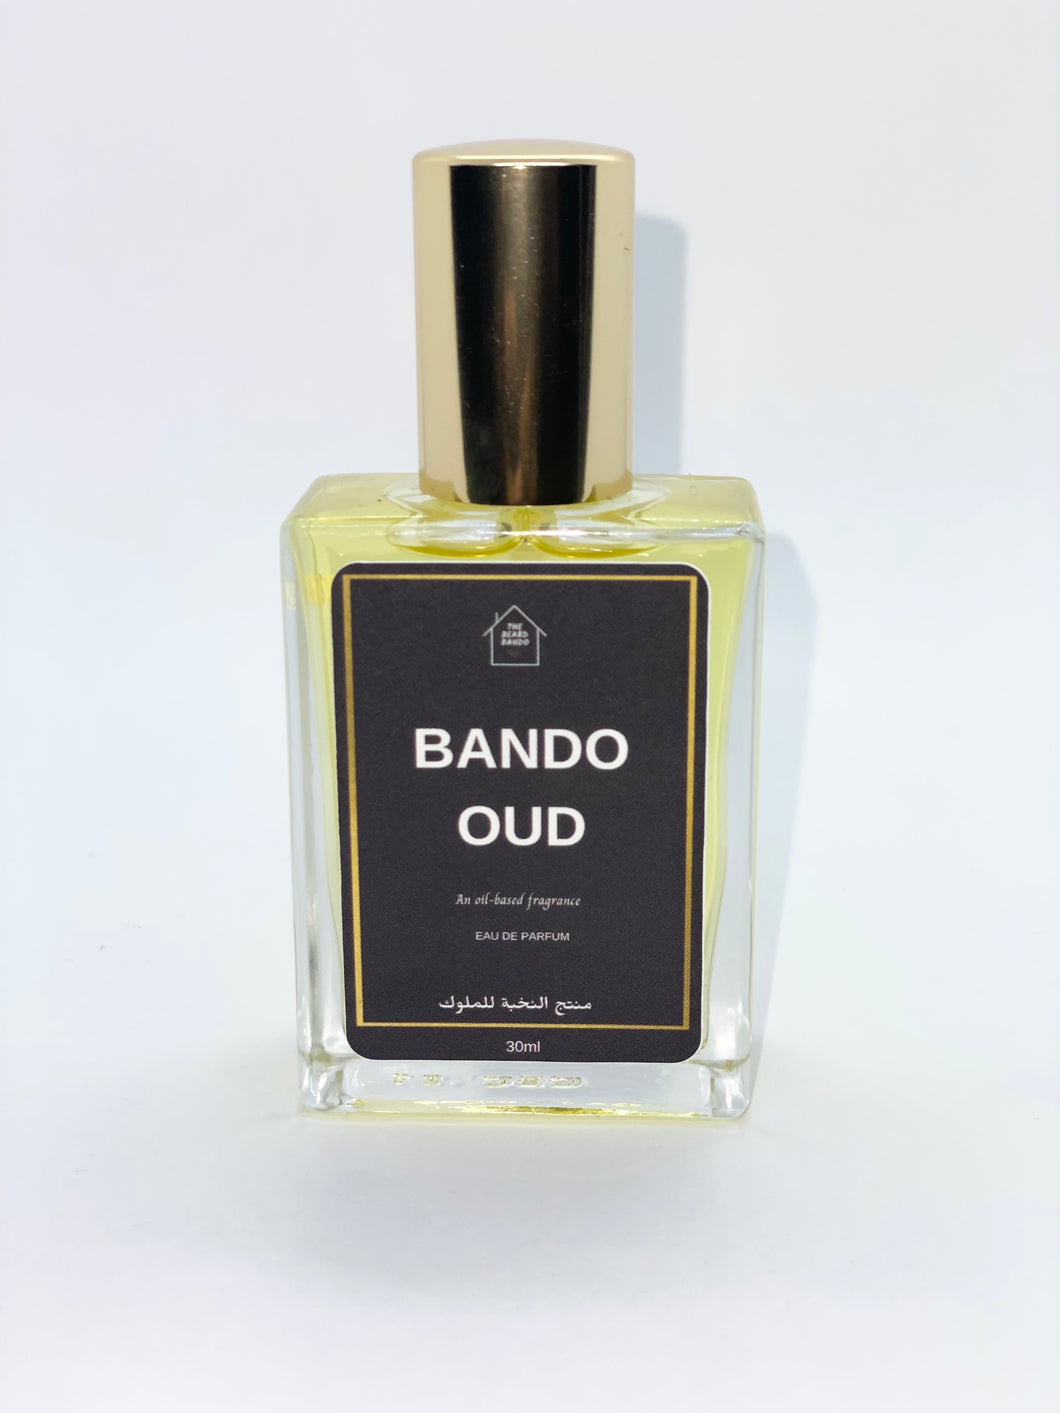 “Satin” Bando Oud by the Beard Bando